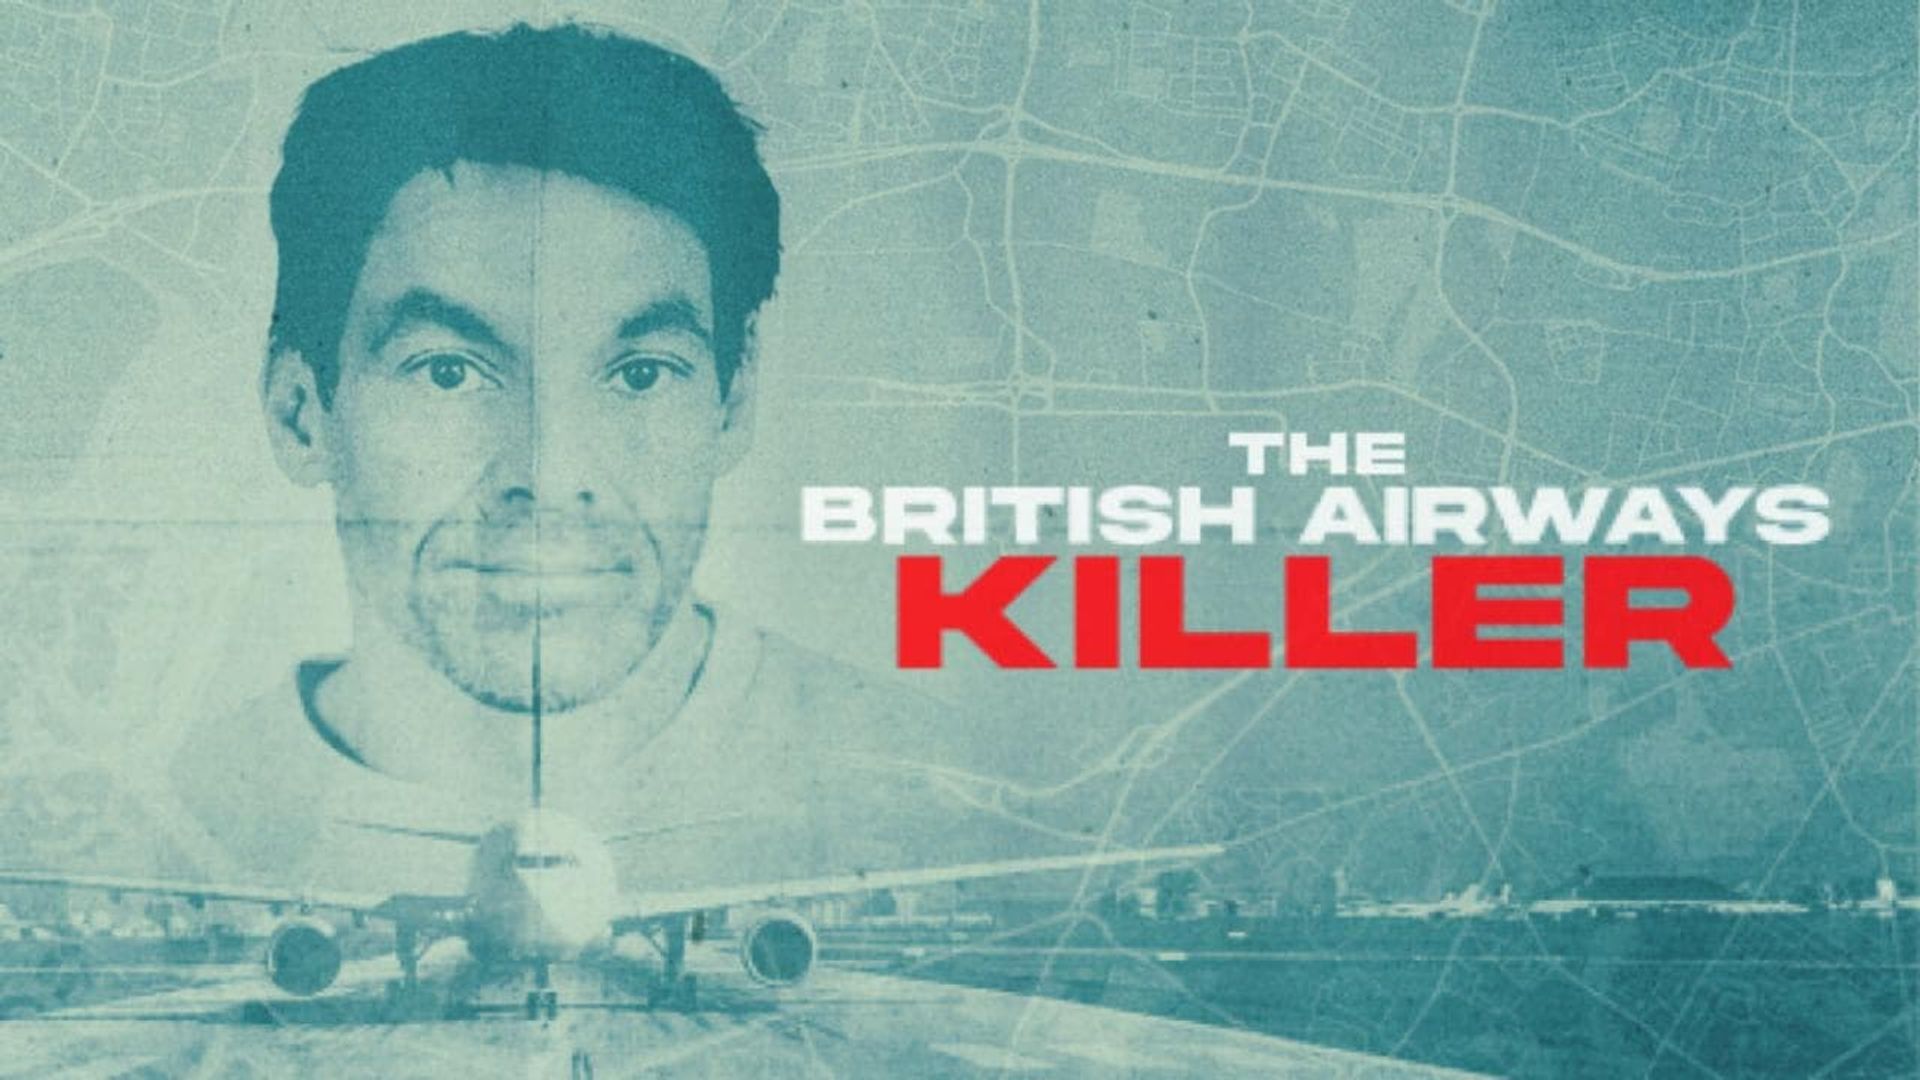 The British Airways Killer background